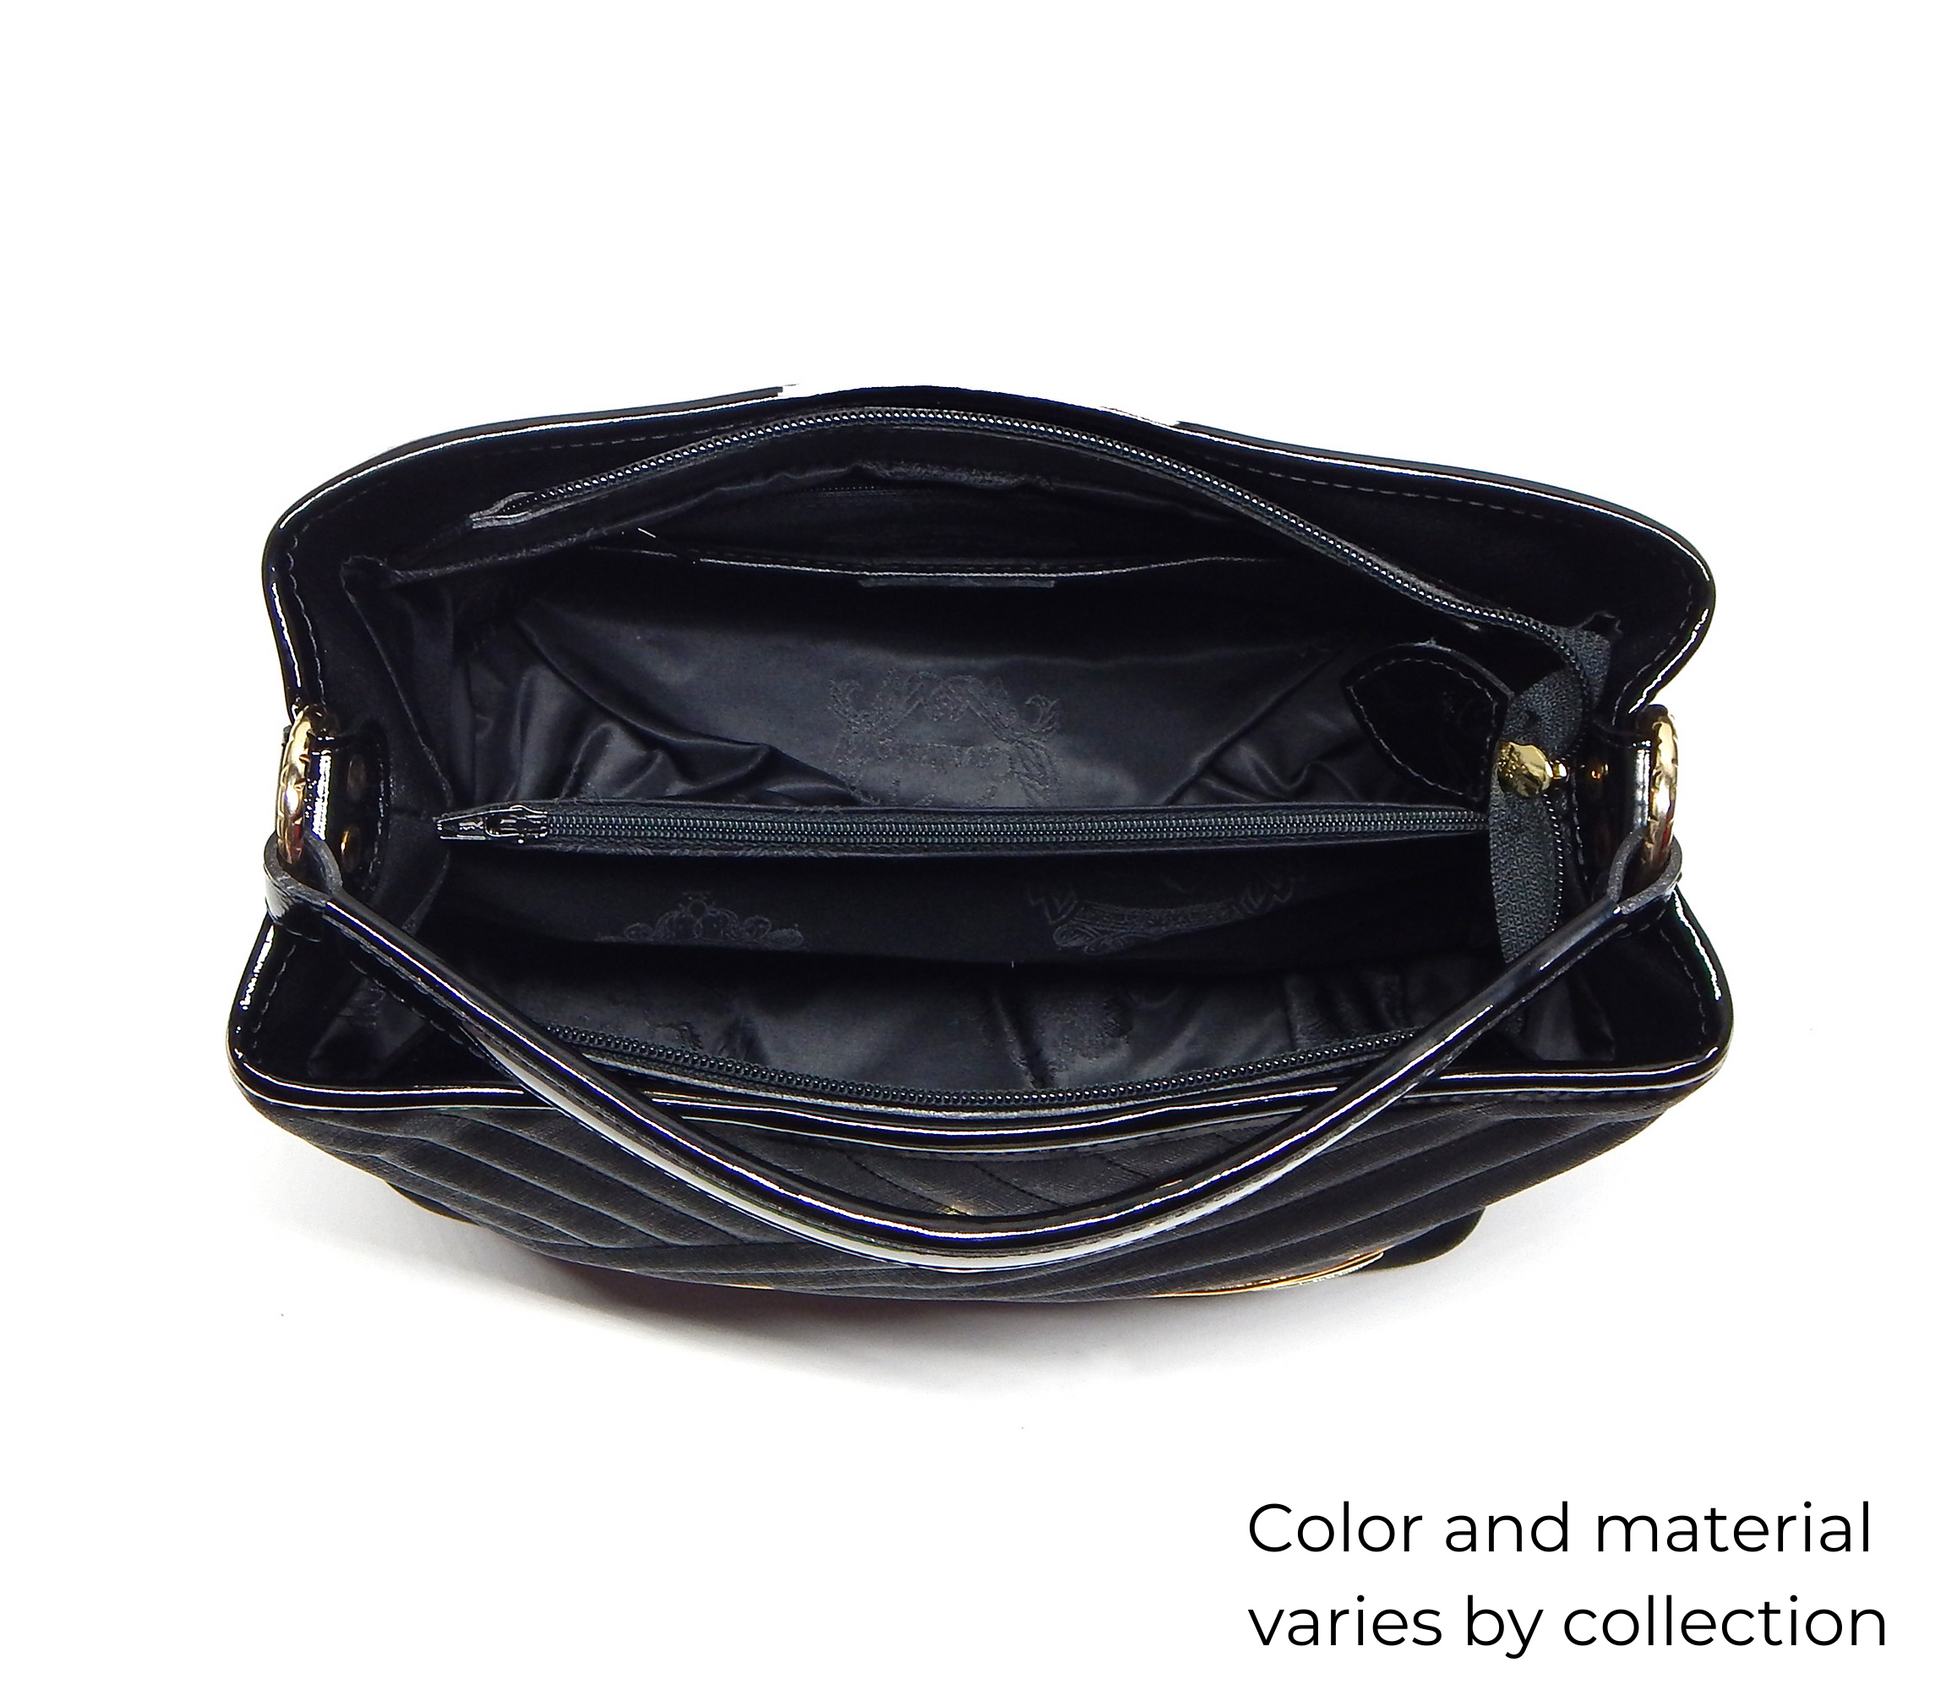 Cavalinho Unique Handbag - Black / SaddleBrown / White - inside_0157_5efac9cd-091b-4a6f-b1a1-9a0320b780e3